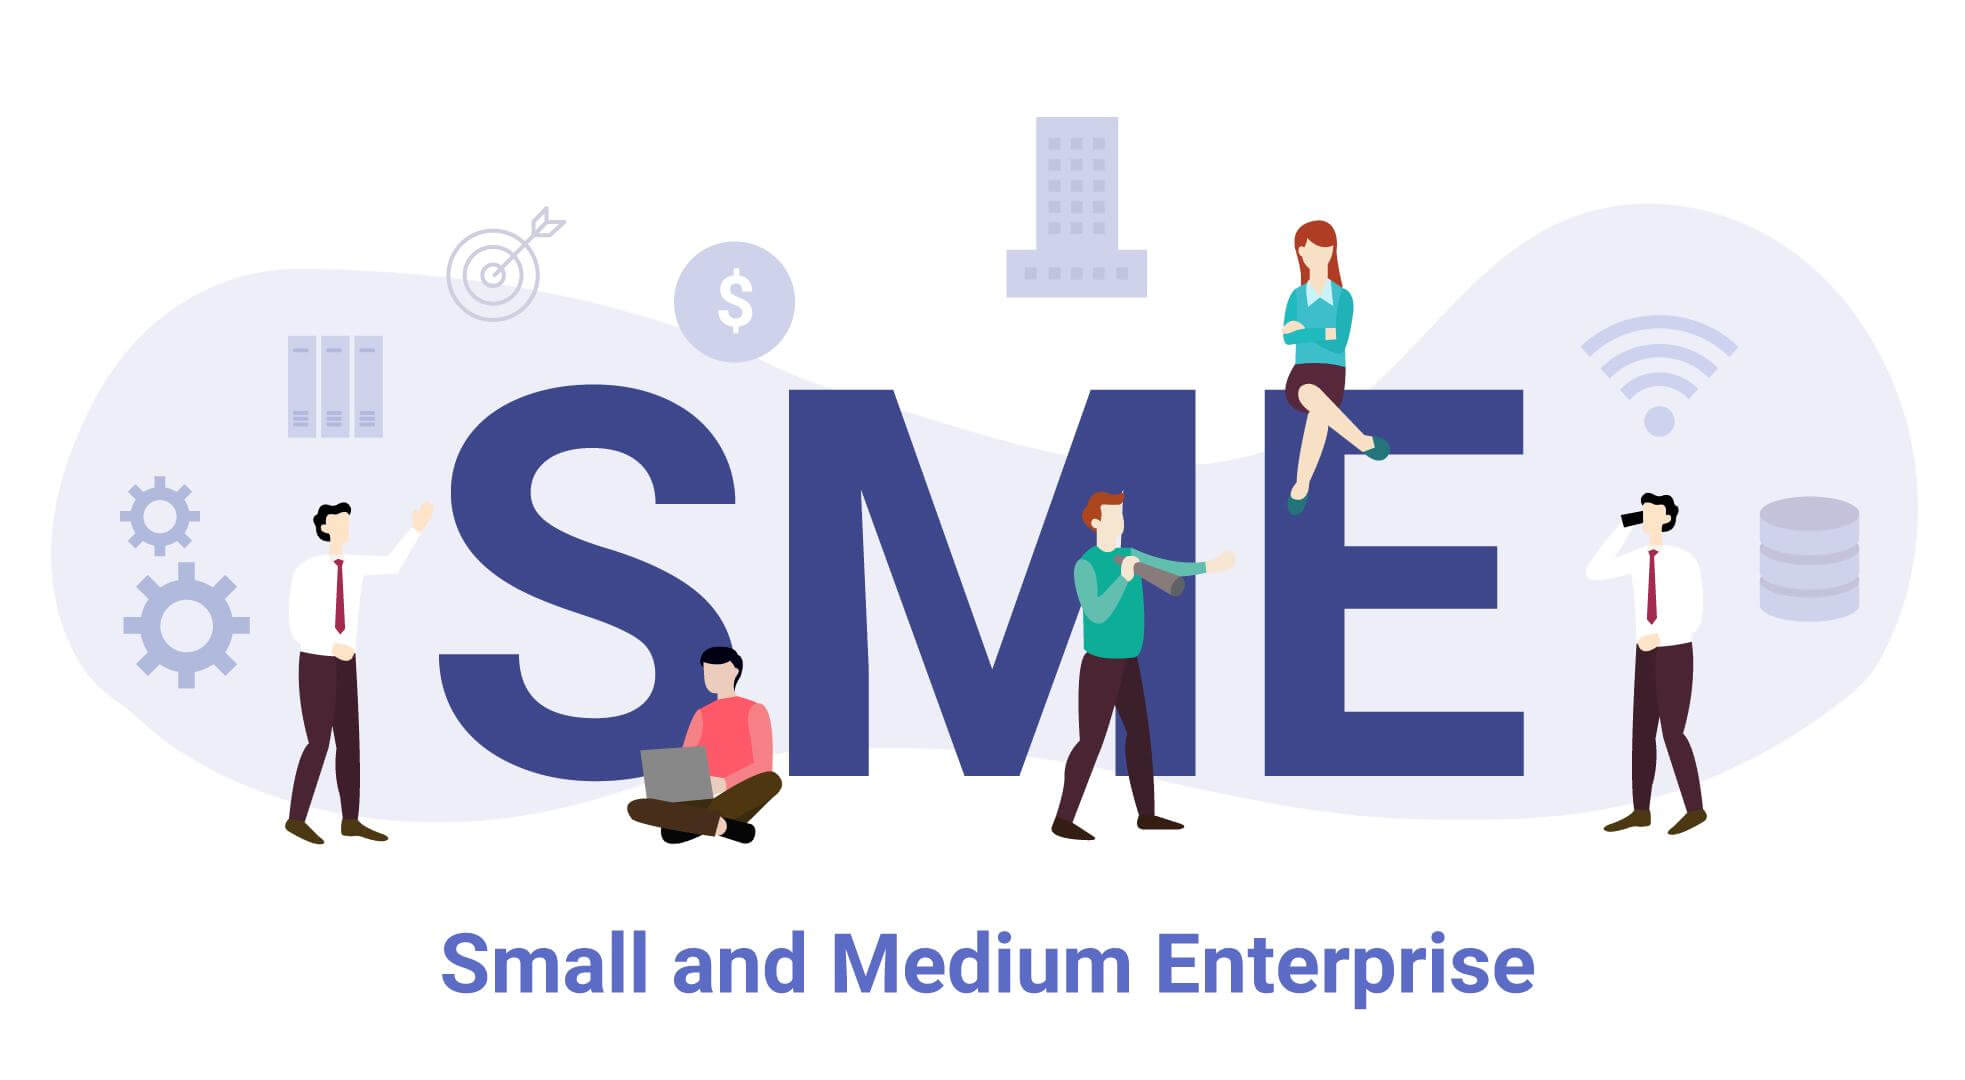 Doanh nghiệp SME là gì? Có tác dụng gì?